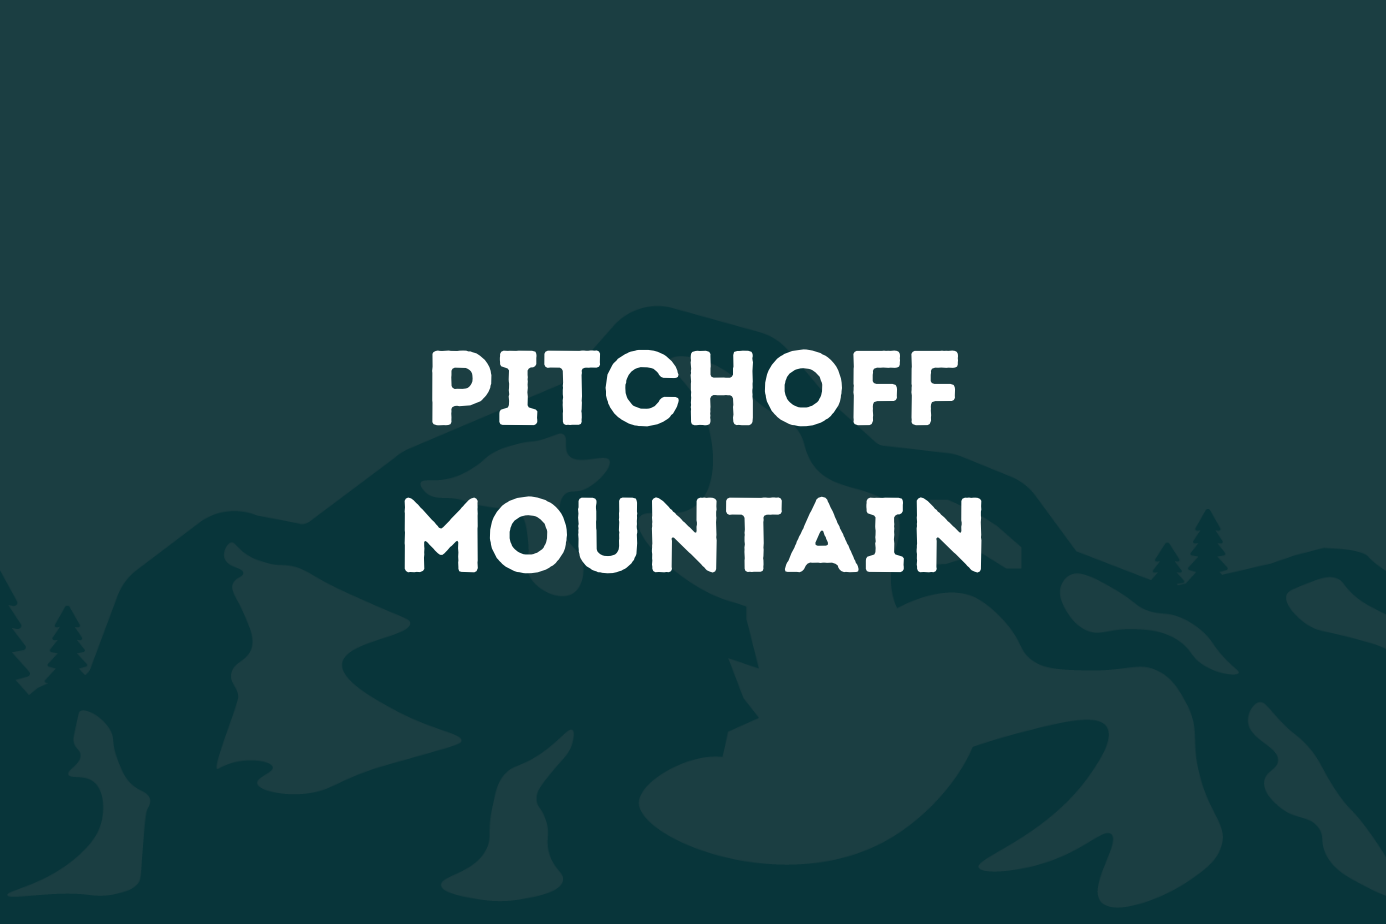 Pitchoff Mountain & Balanced Rocks - Pure Adirondacks